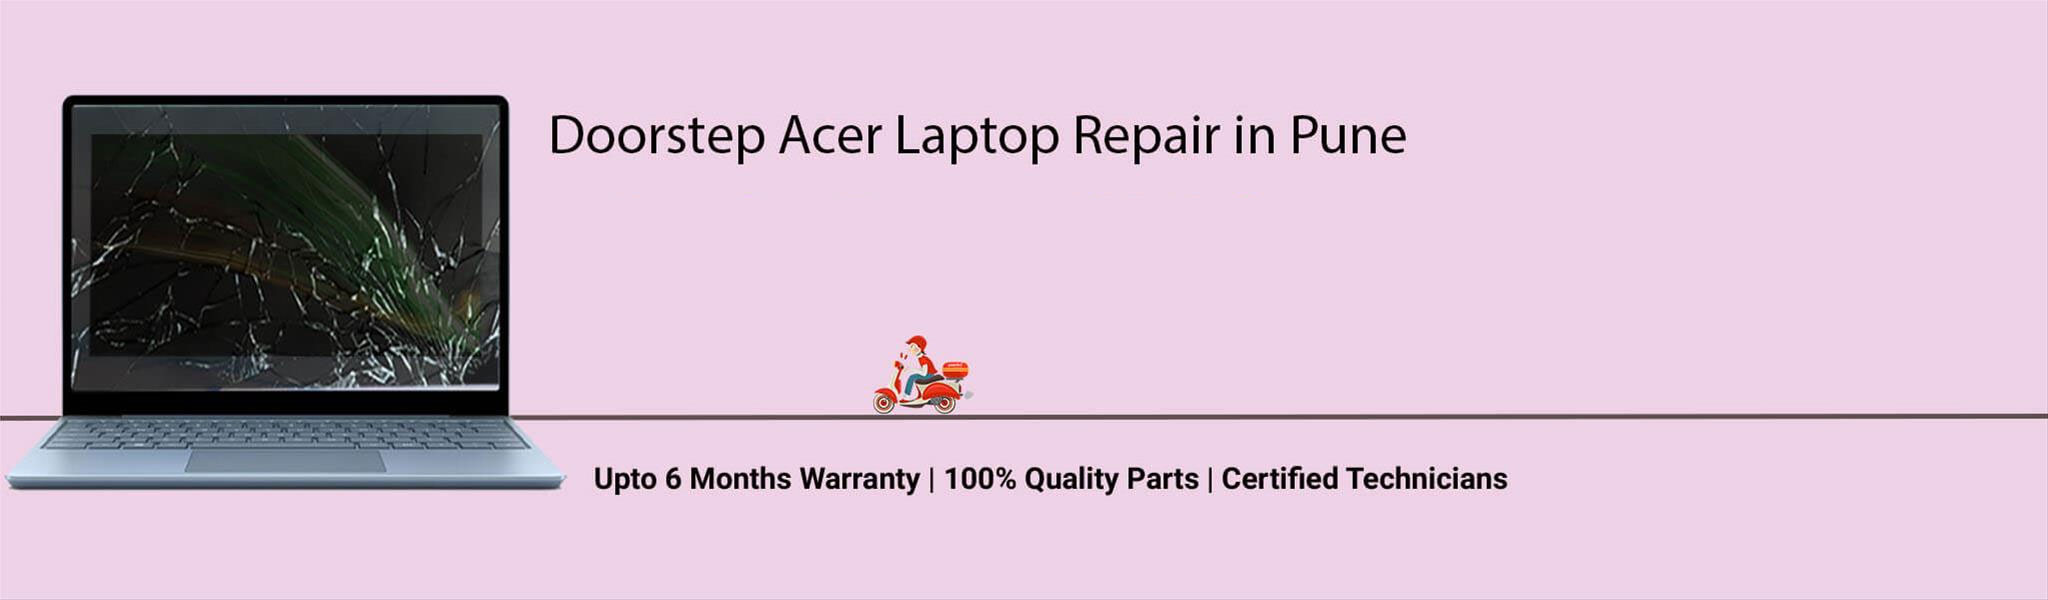 acer-laptop-banner-pune.jpg